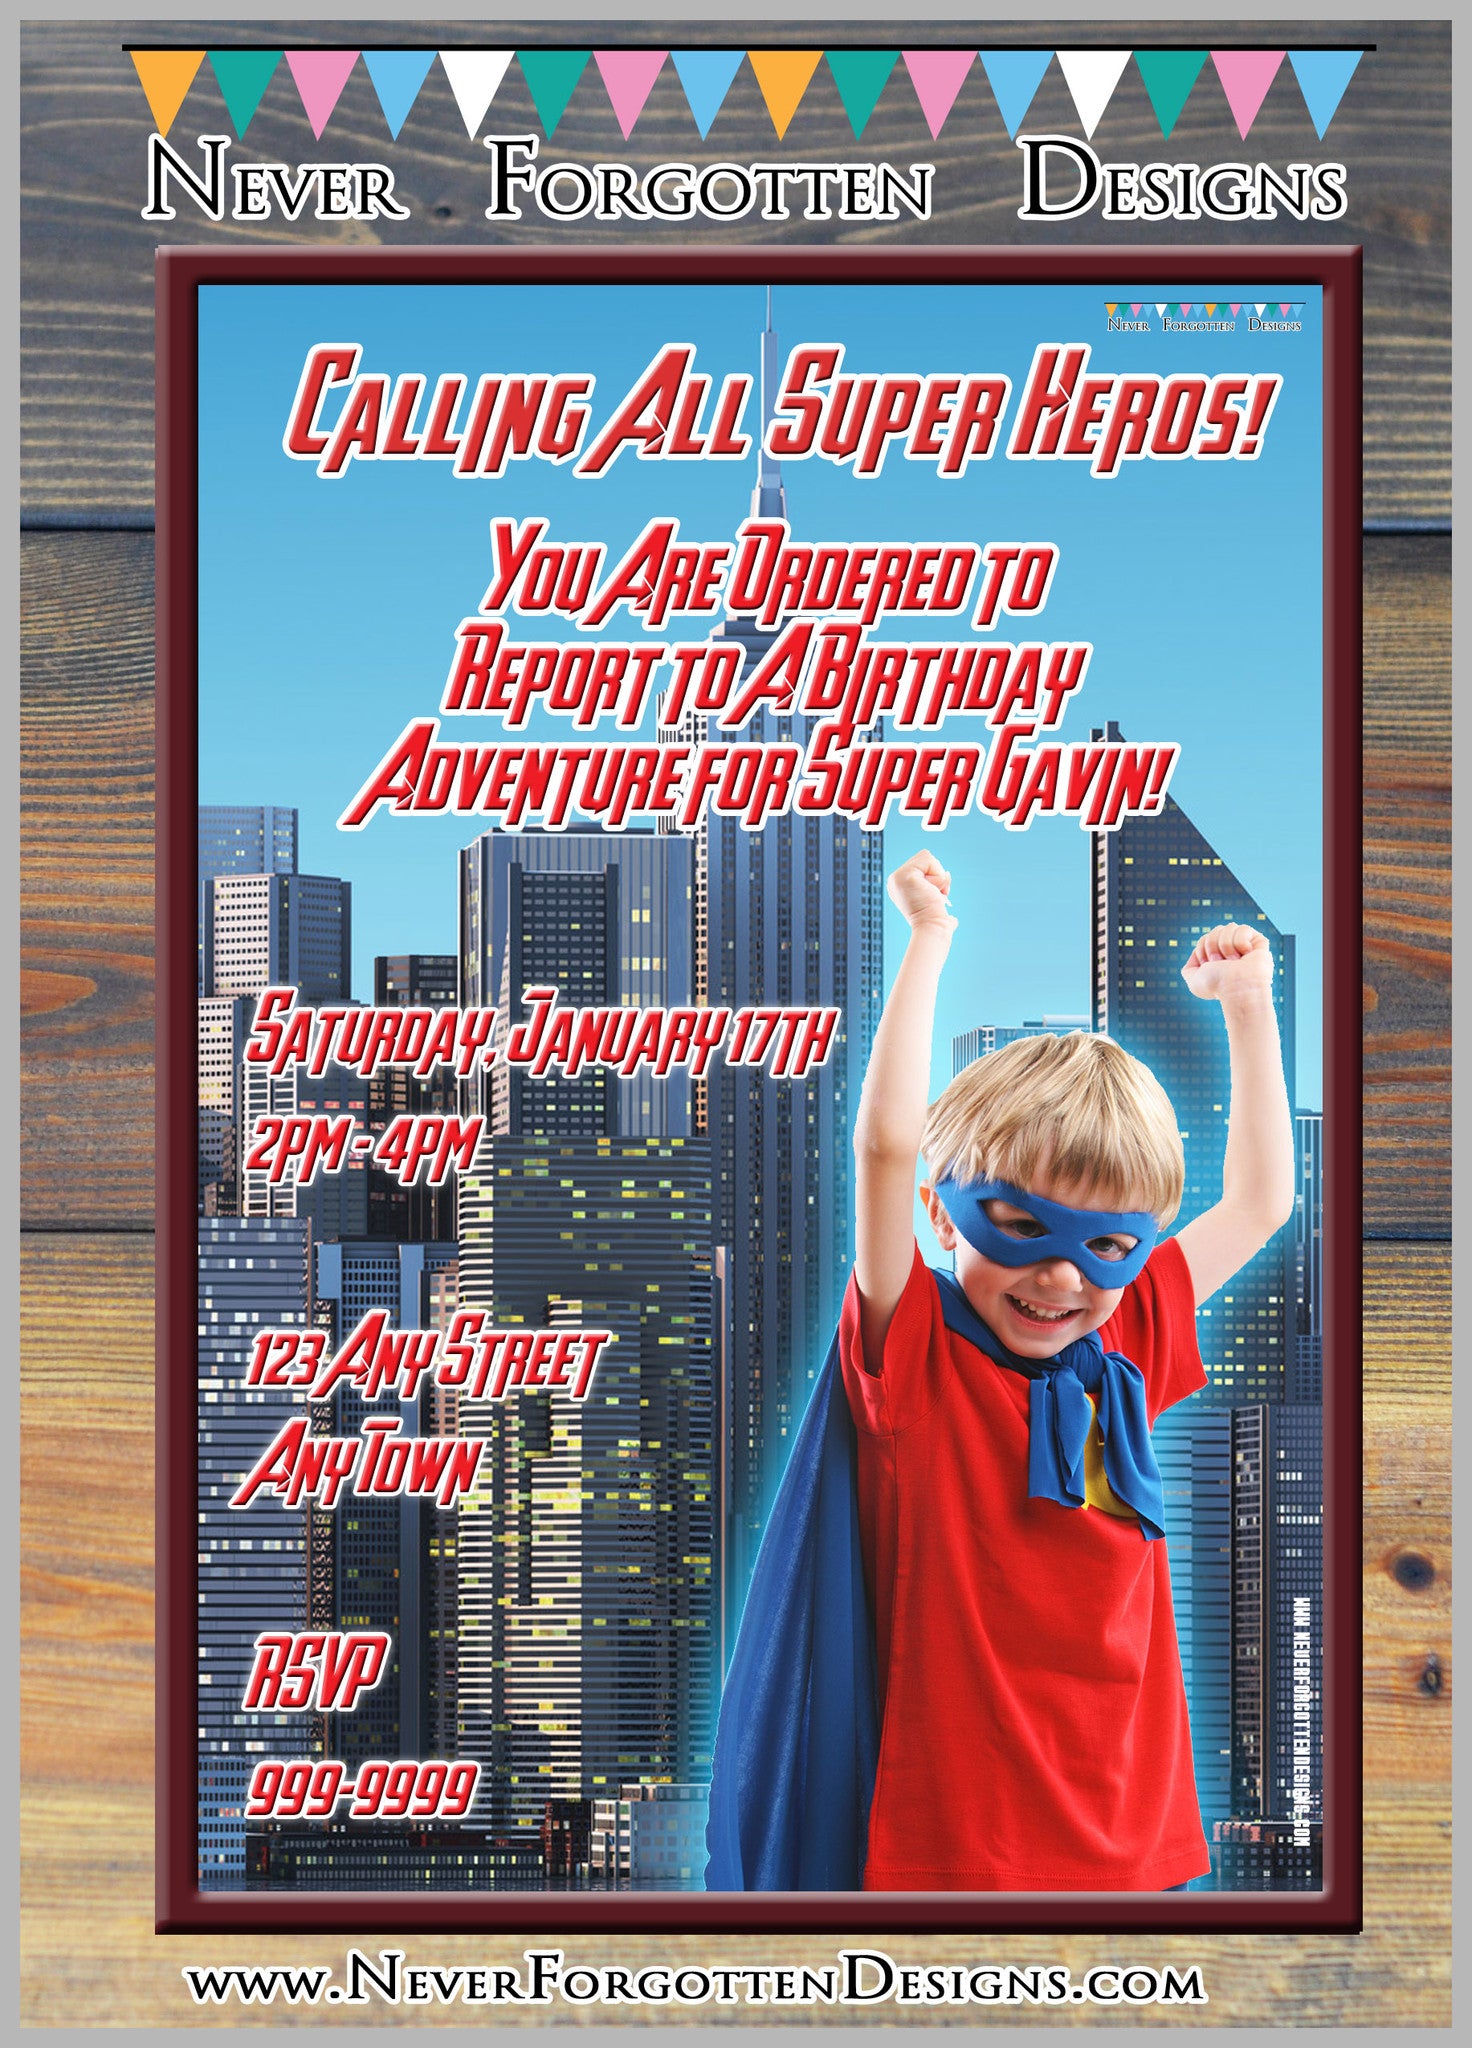 Super Hero Photo Invitation Design - Never Forgotten Designs